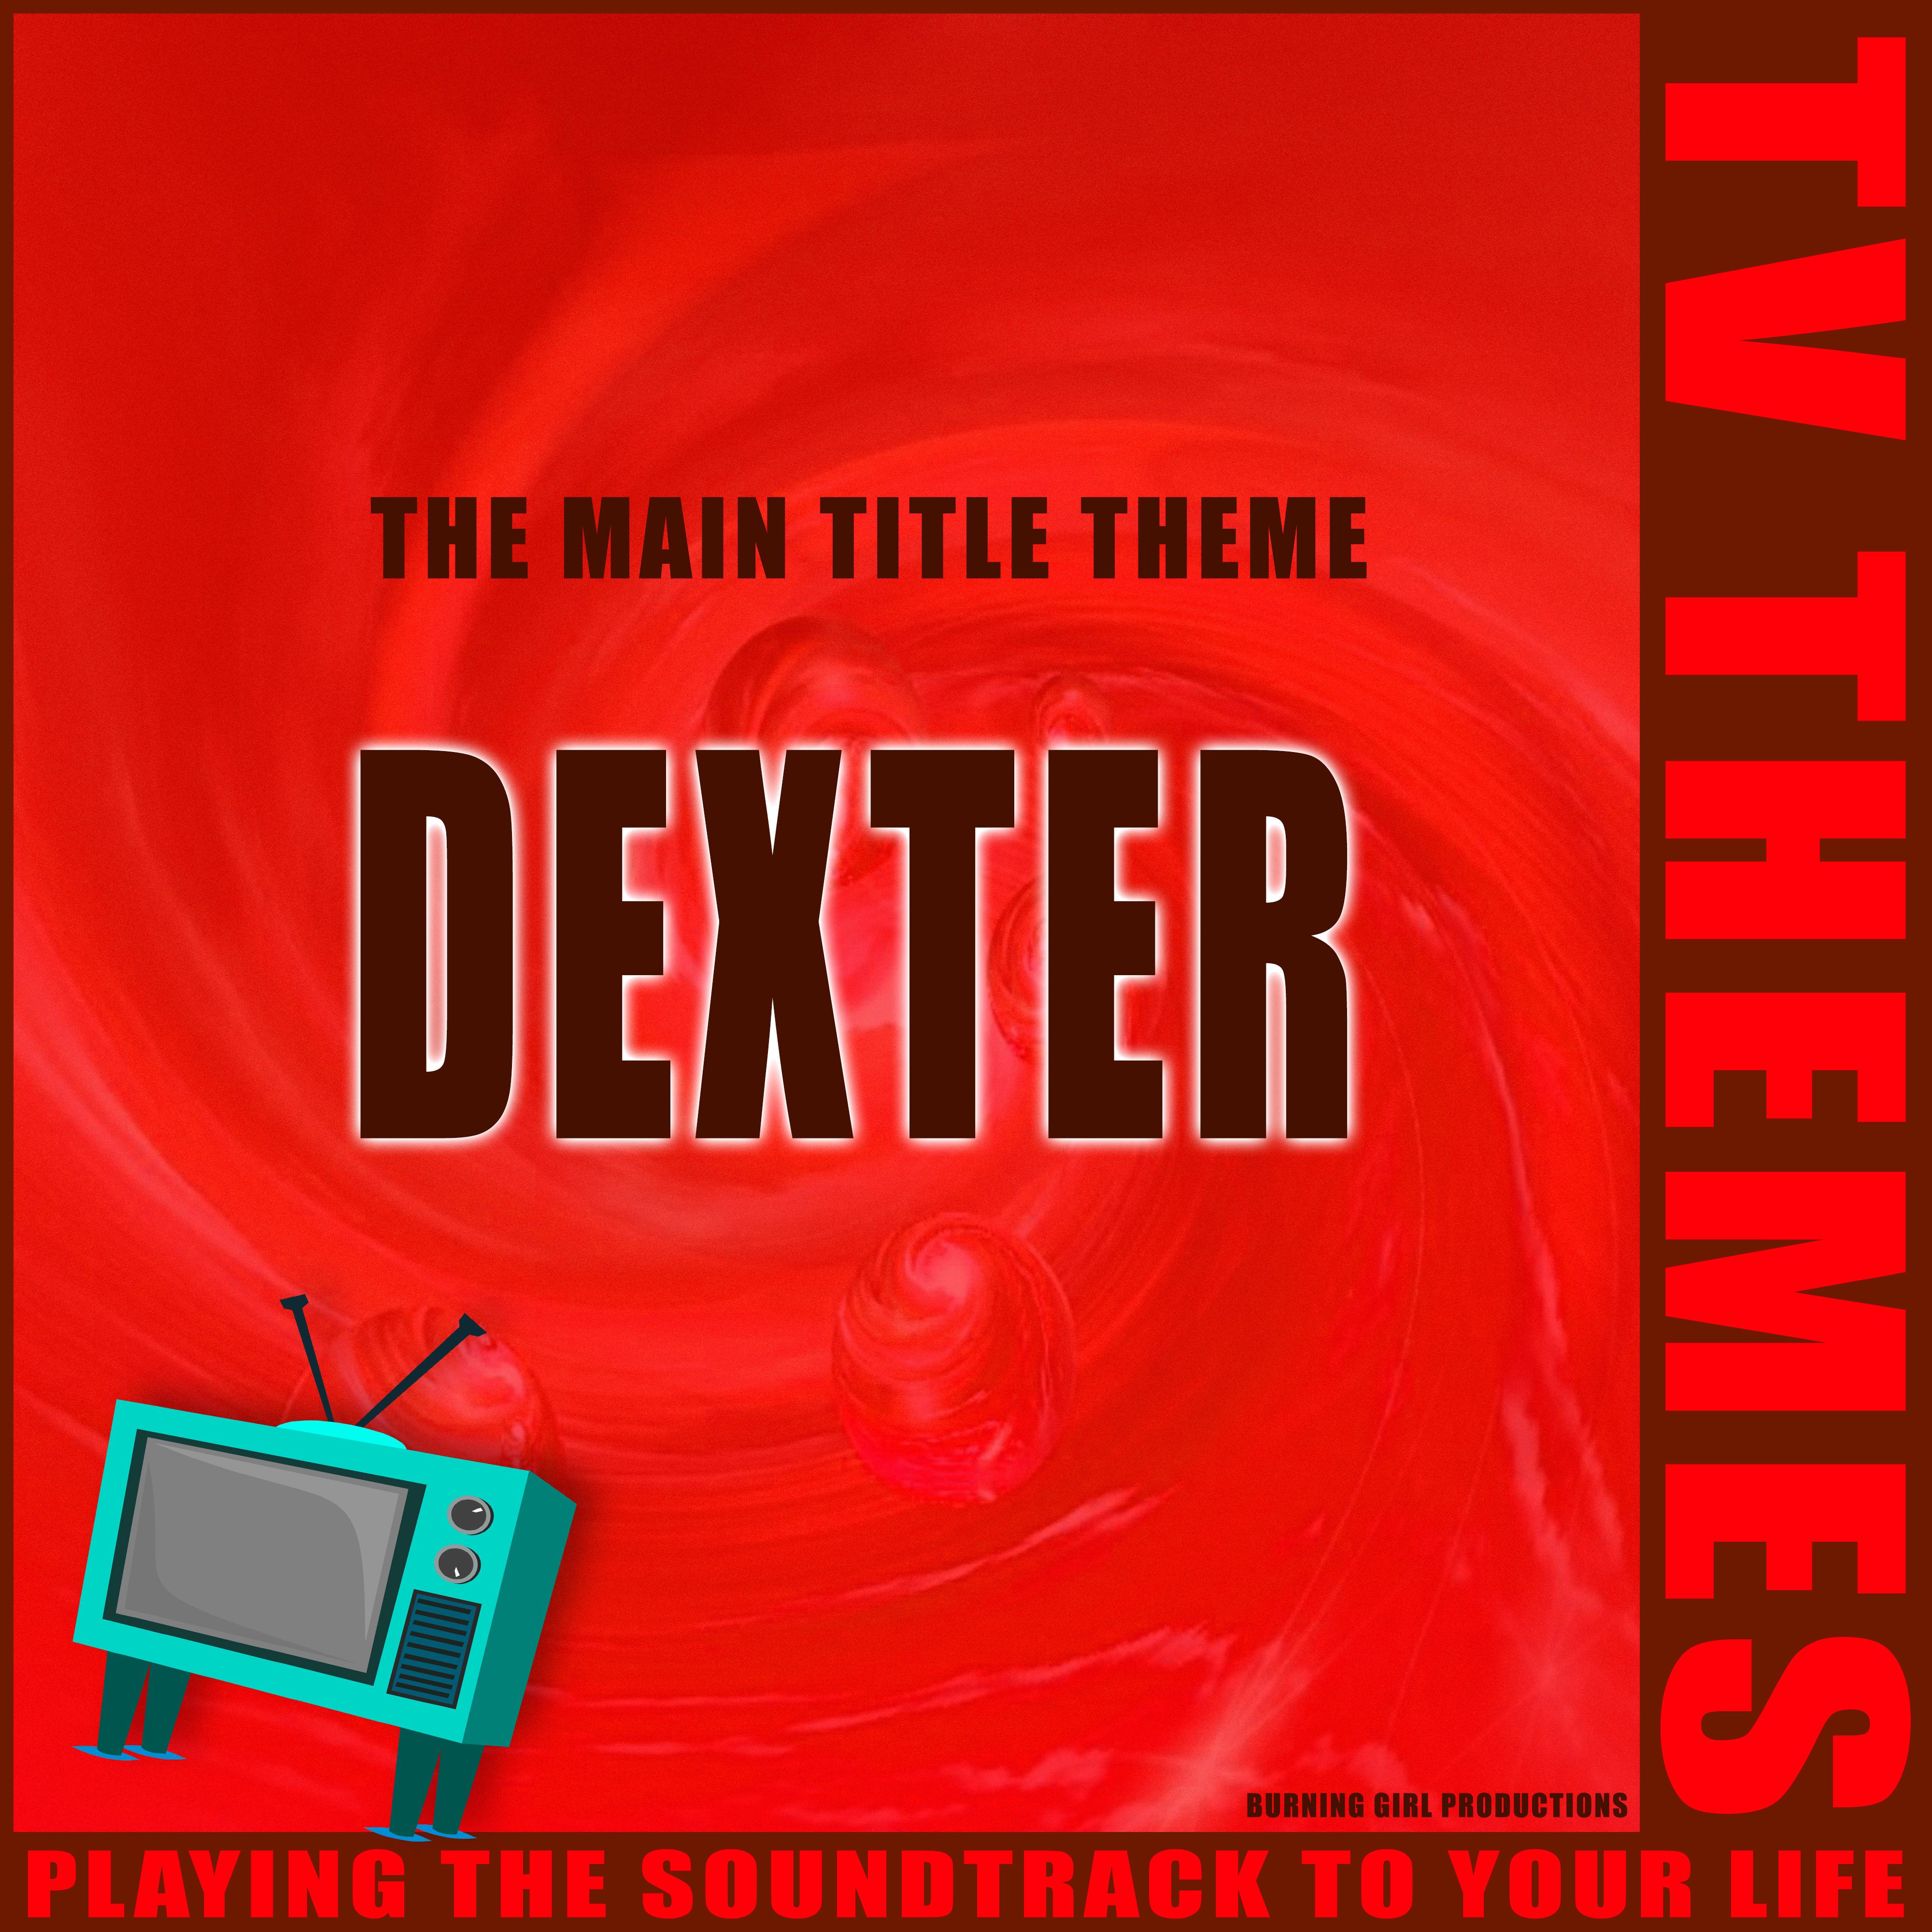 The Main Title Theme - Dexter